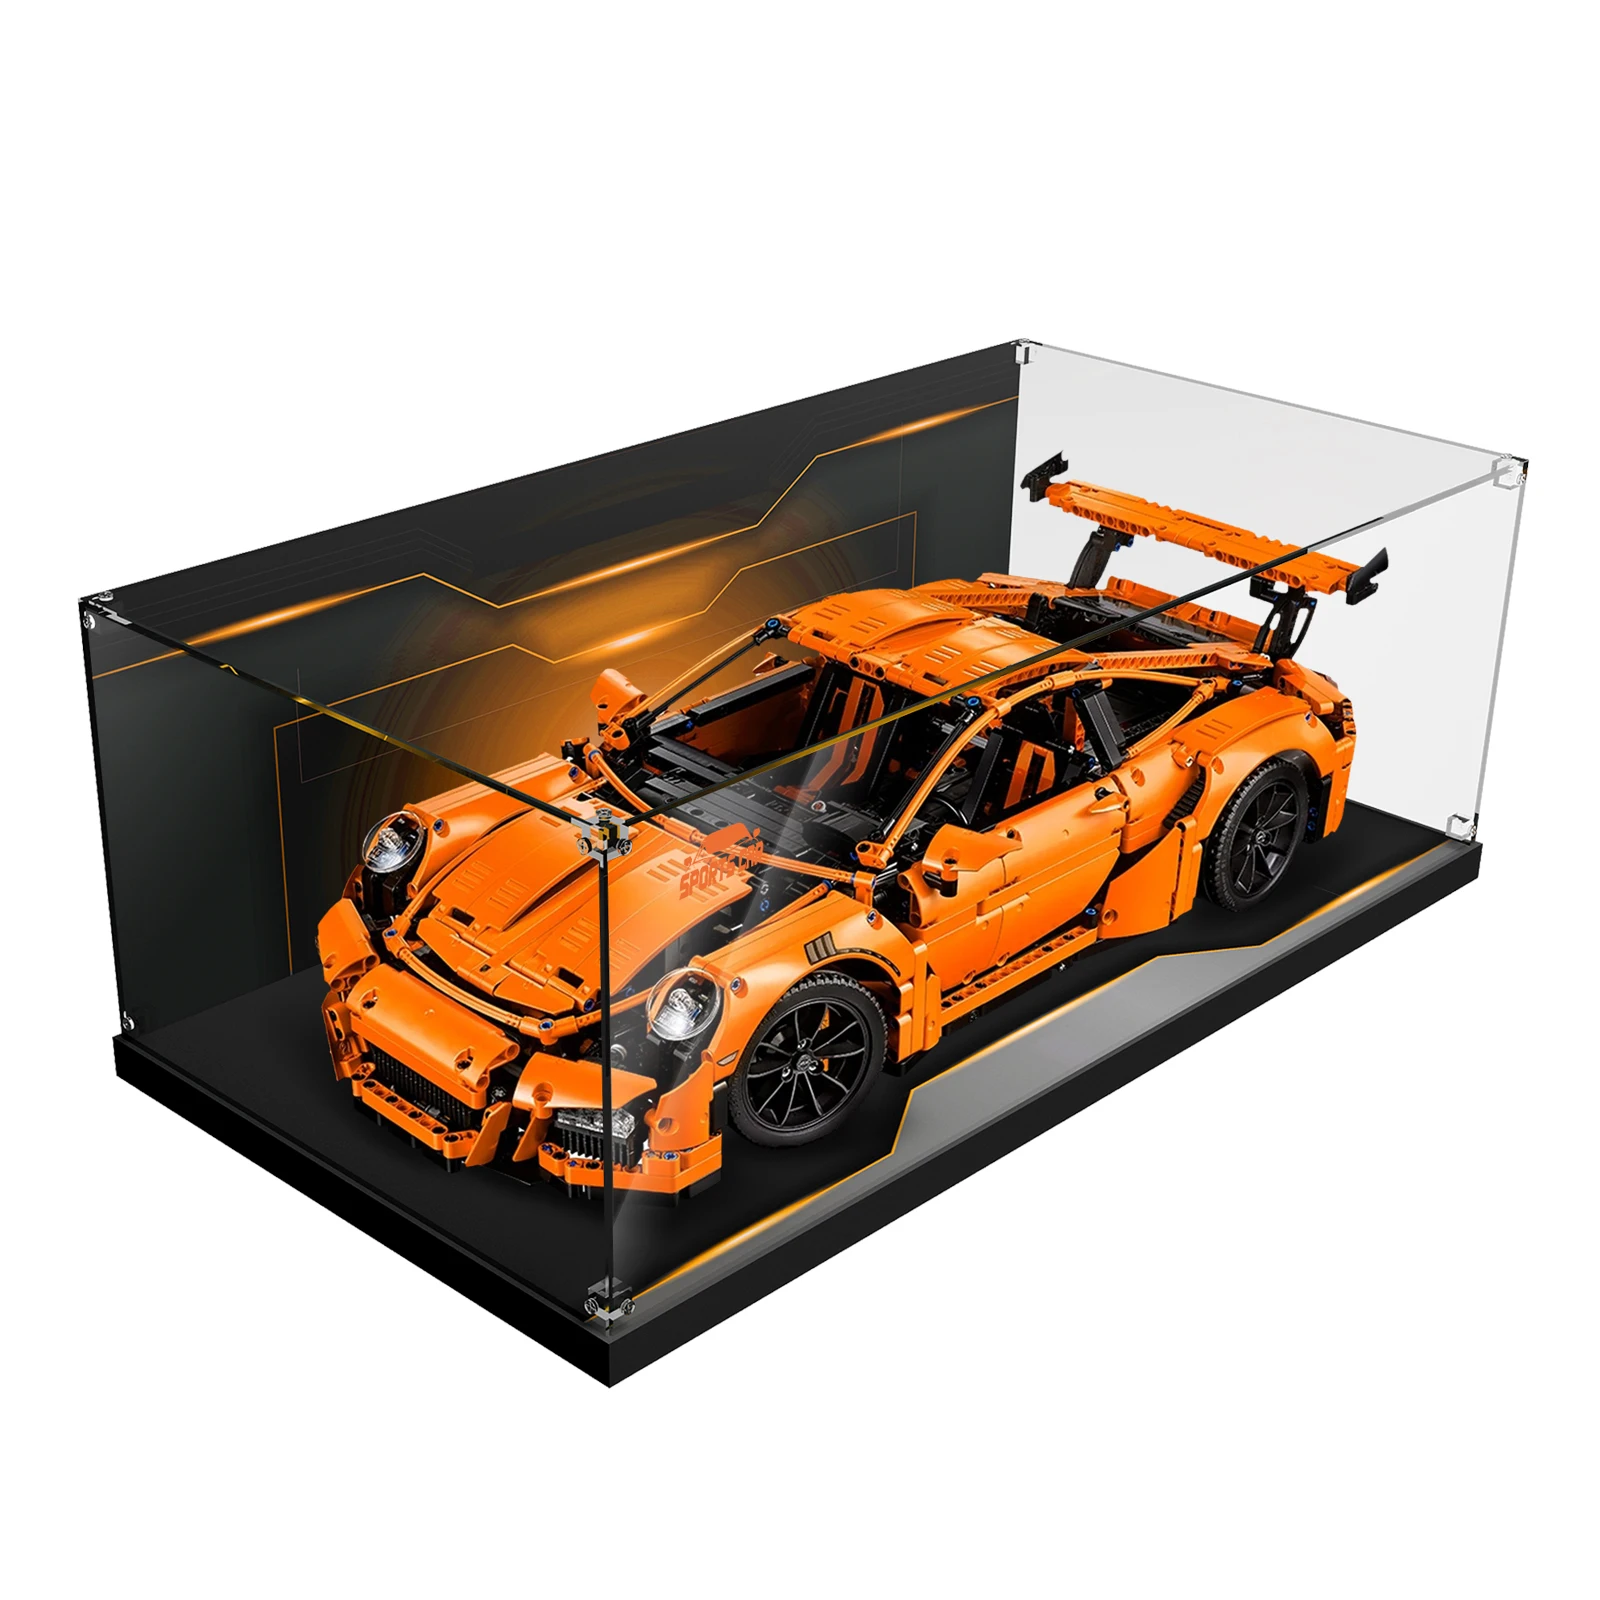 Caja de exhibición acrílica para coche GT3 RS 911 Tech modelo 42056, escaparate transparente a prueba de polvo (no incluye el juego lego)